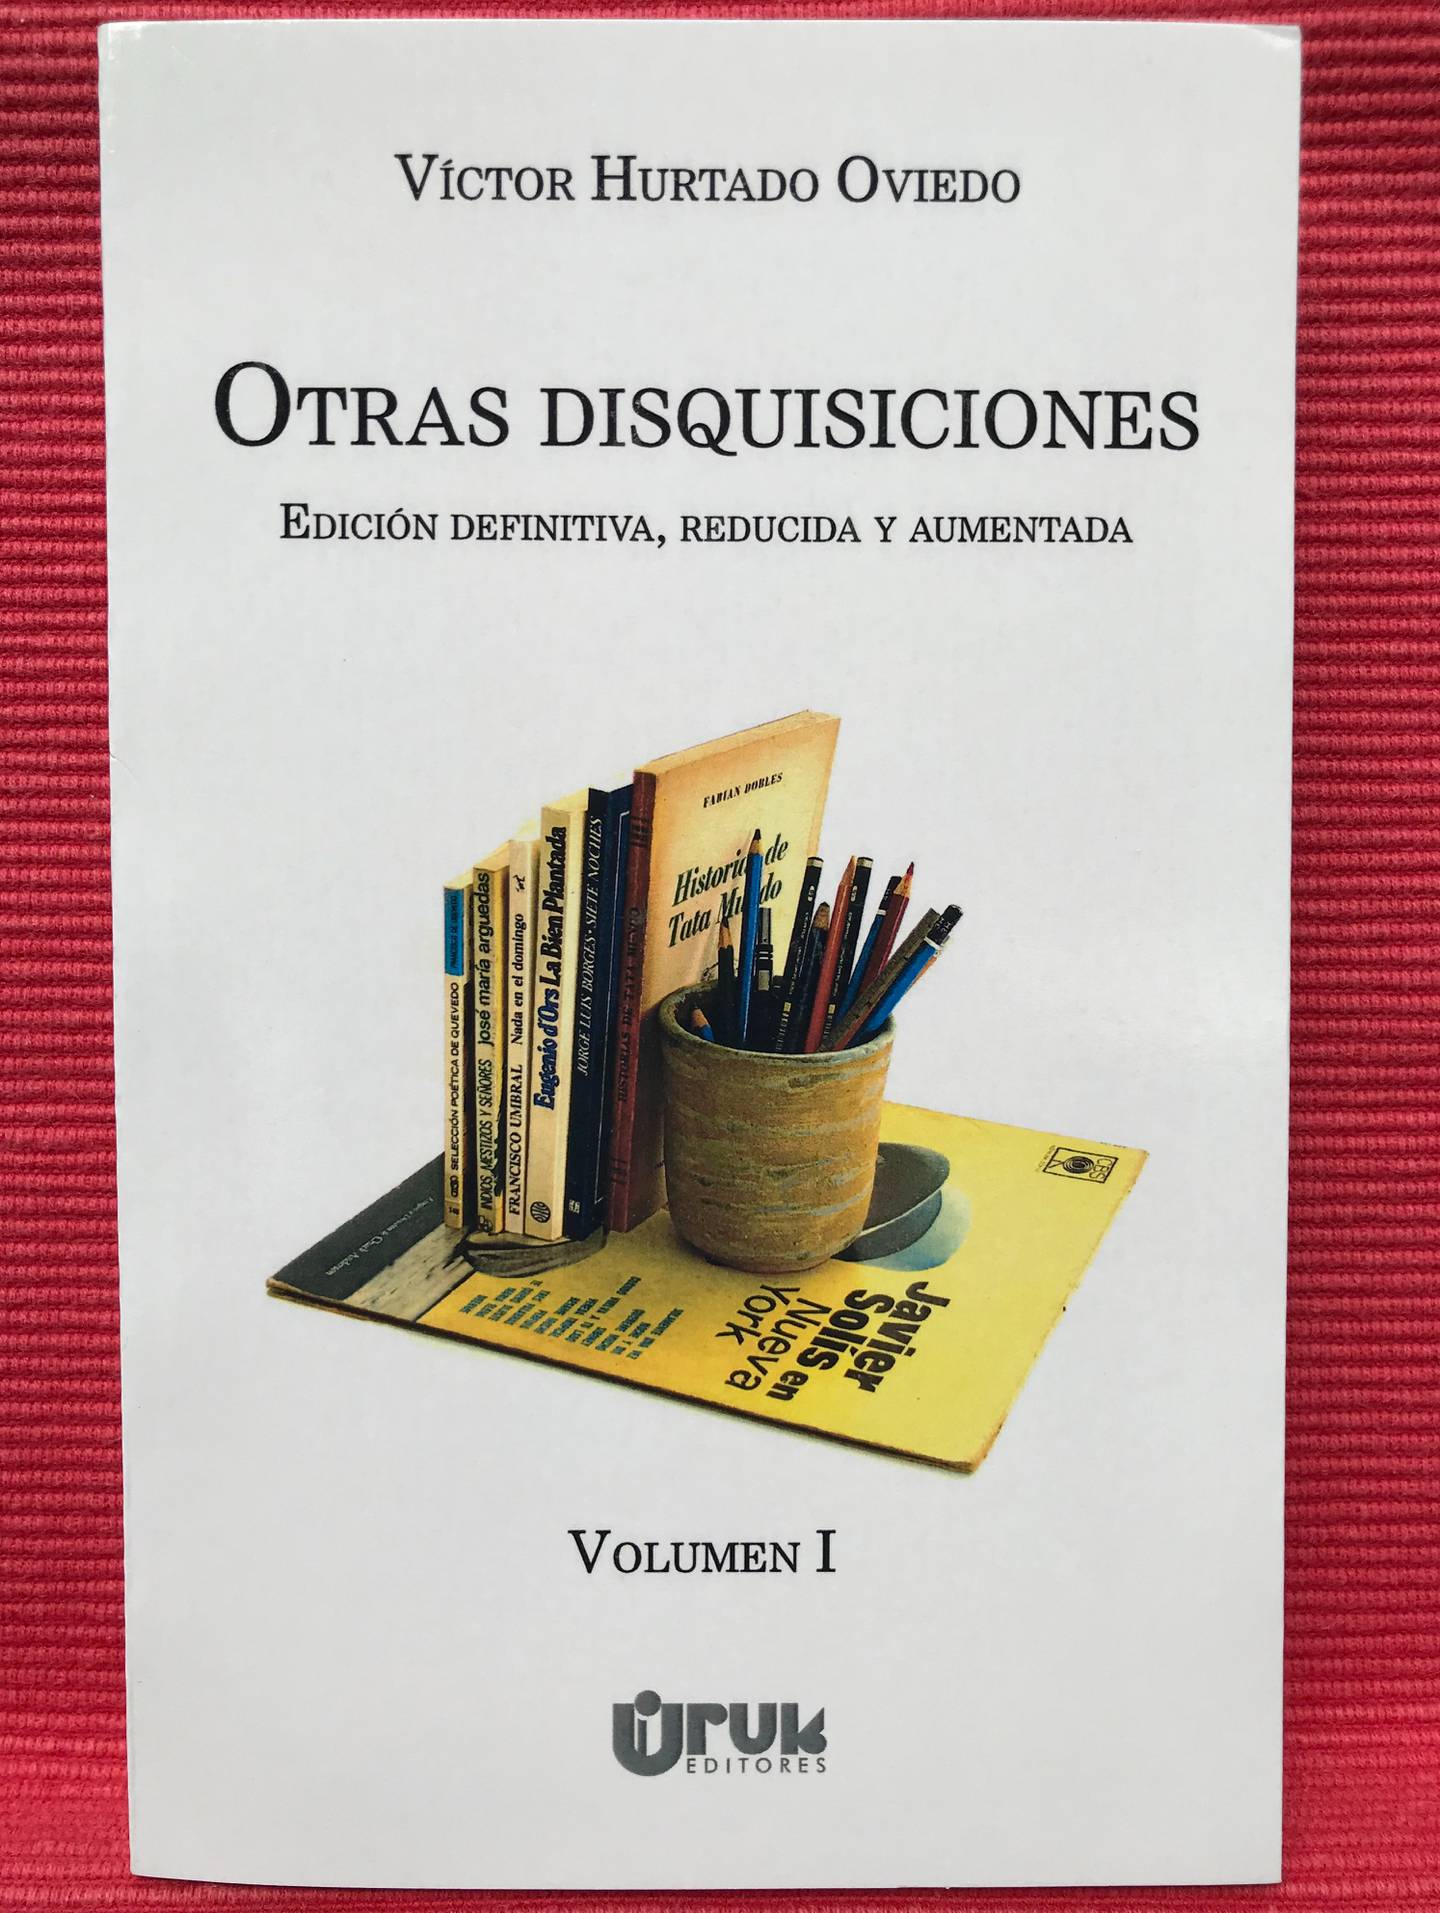 Uruk ha publicado la 'edición definitiva, reducida y aumentada' de 'Otras disquisiciones' en dos volúmenes.